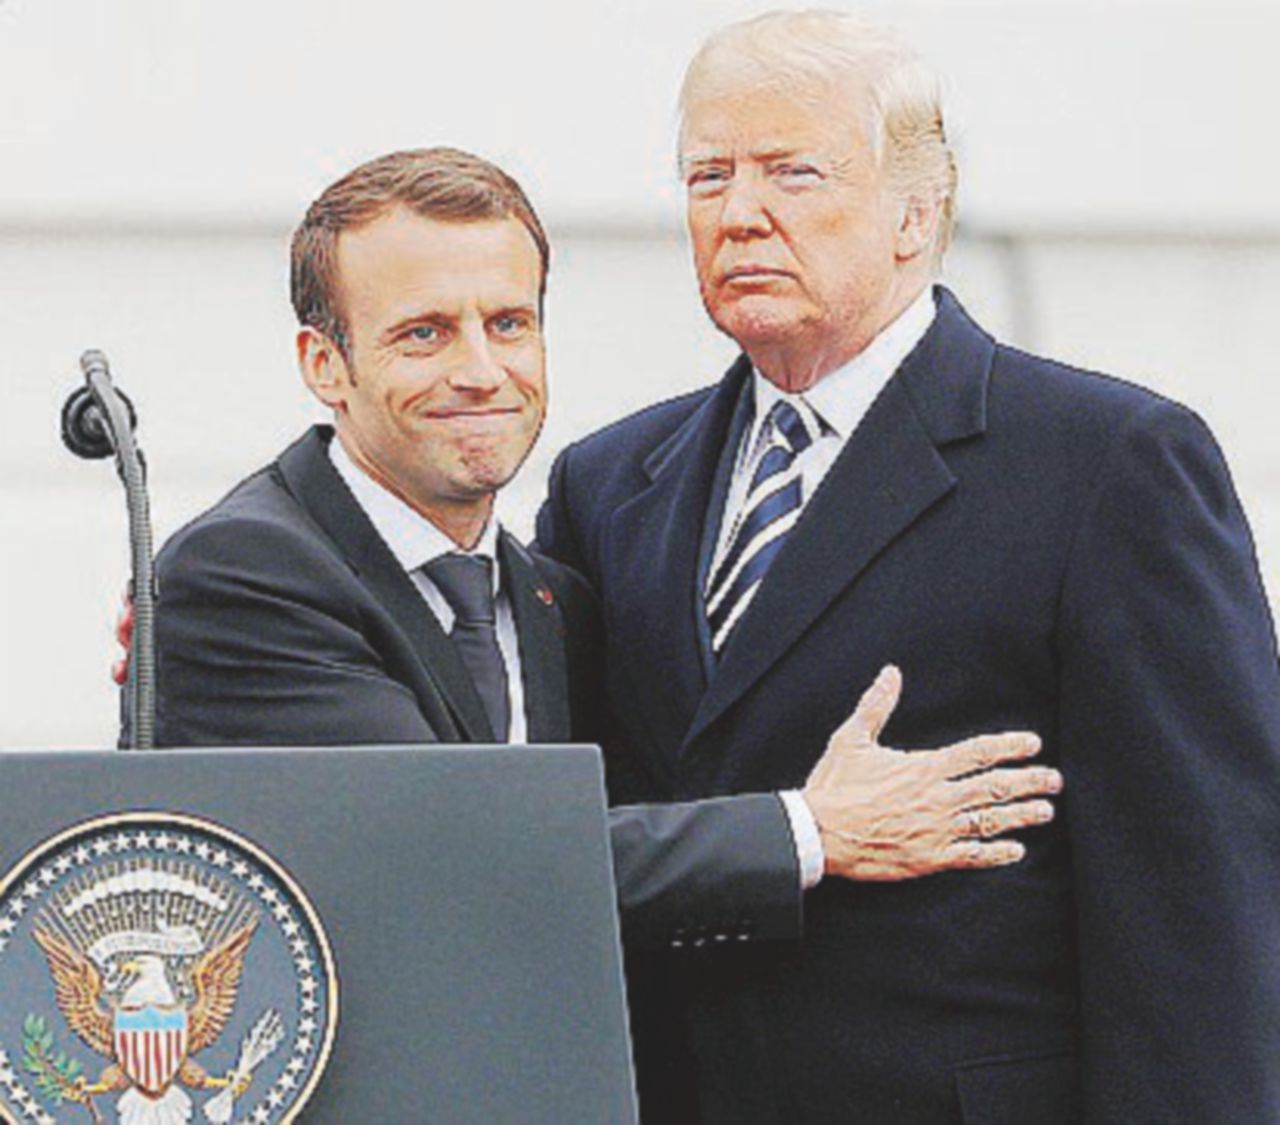 Copertina di “È il momento della forza” Trump e l’amico Macron bodybuilder della diplomazia